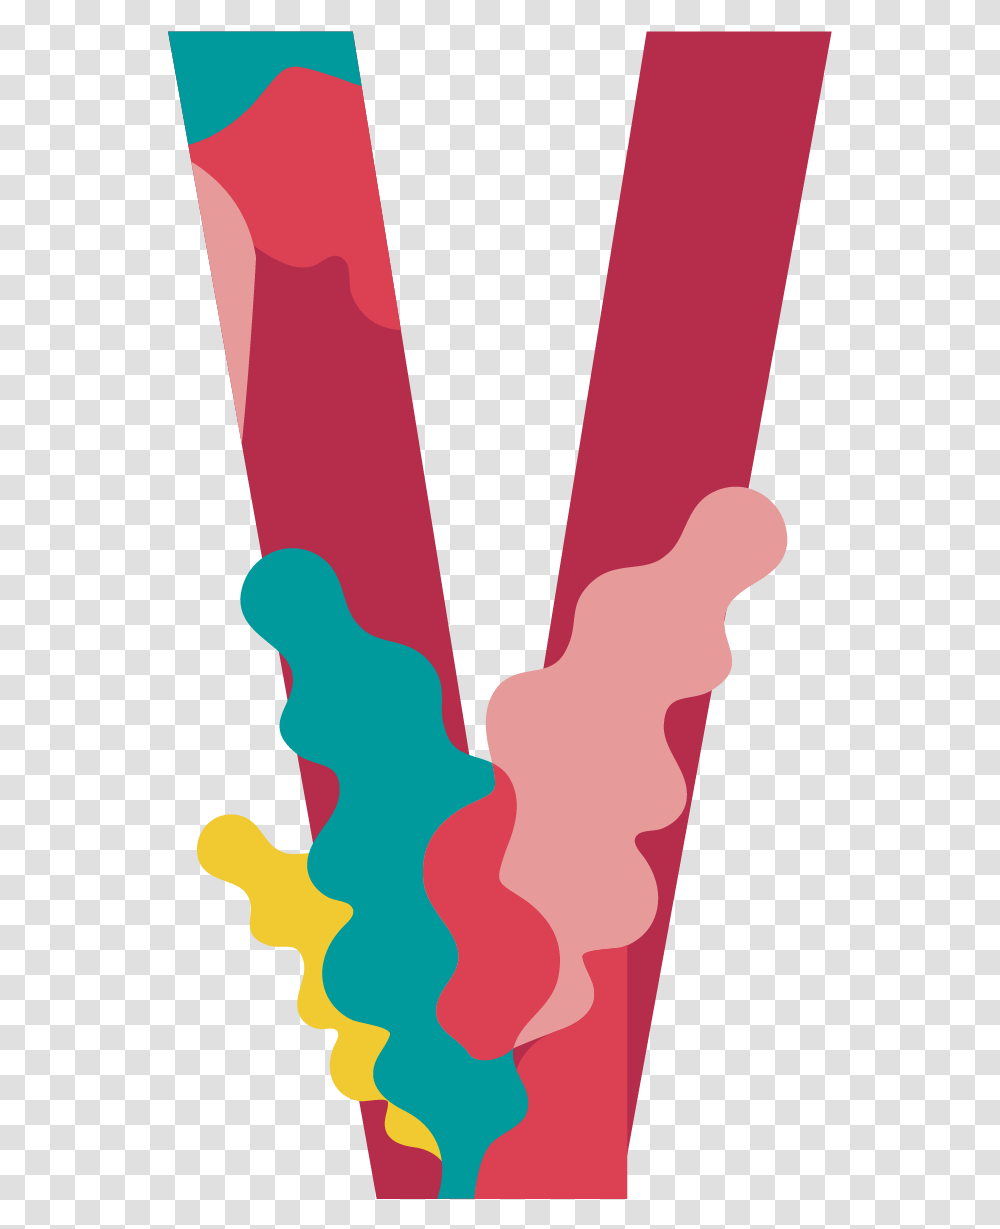 Letter V Image Illustration, Hand, Suspenders Transparent Png